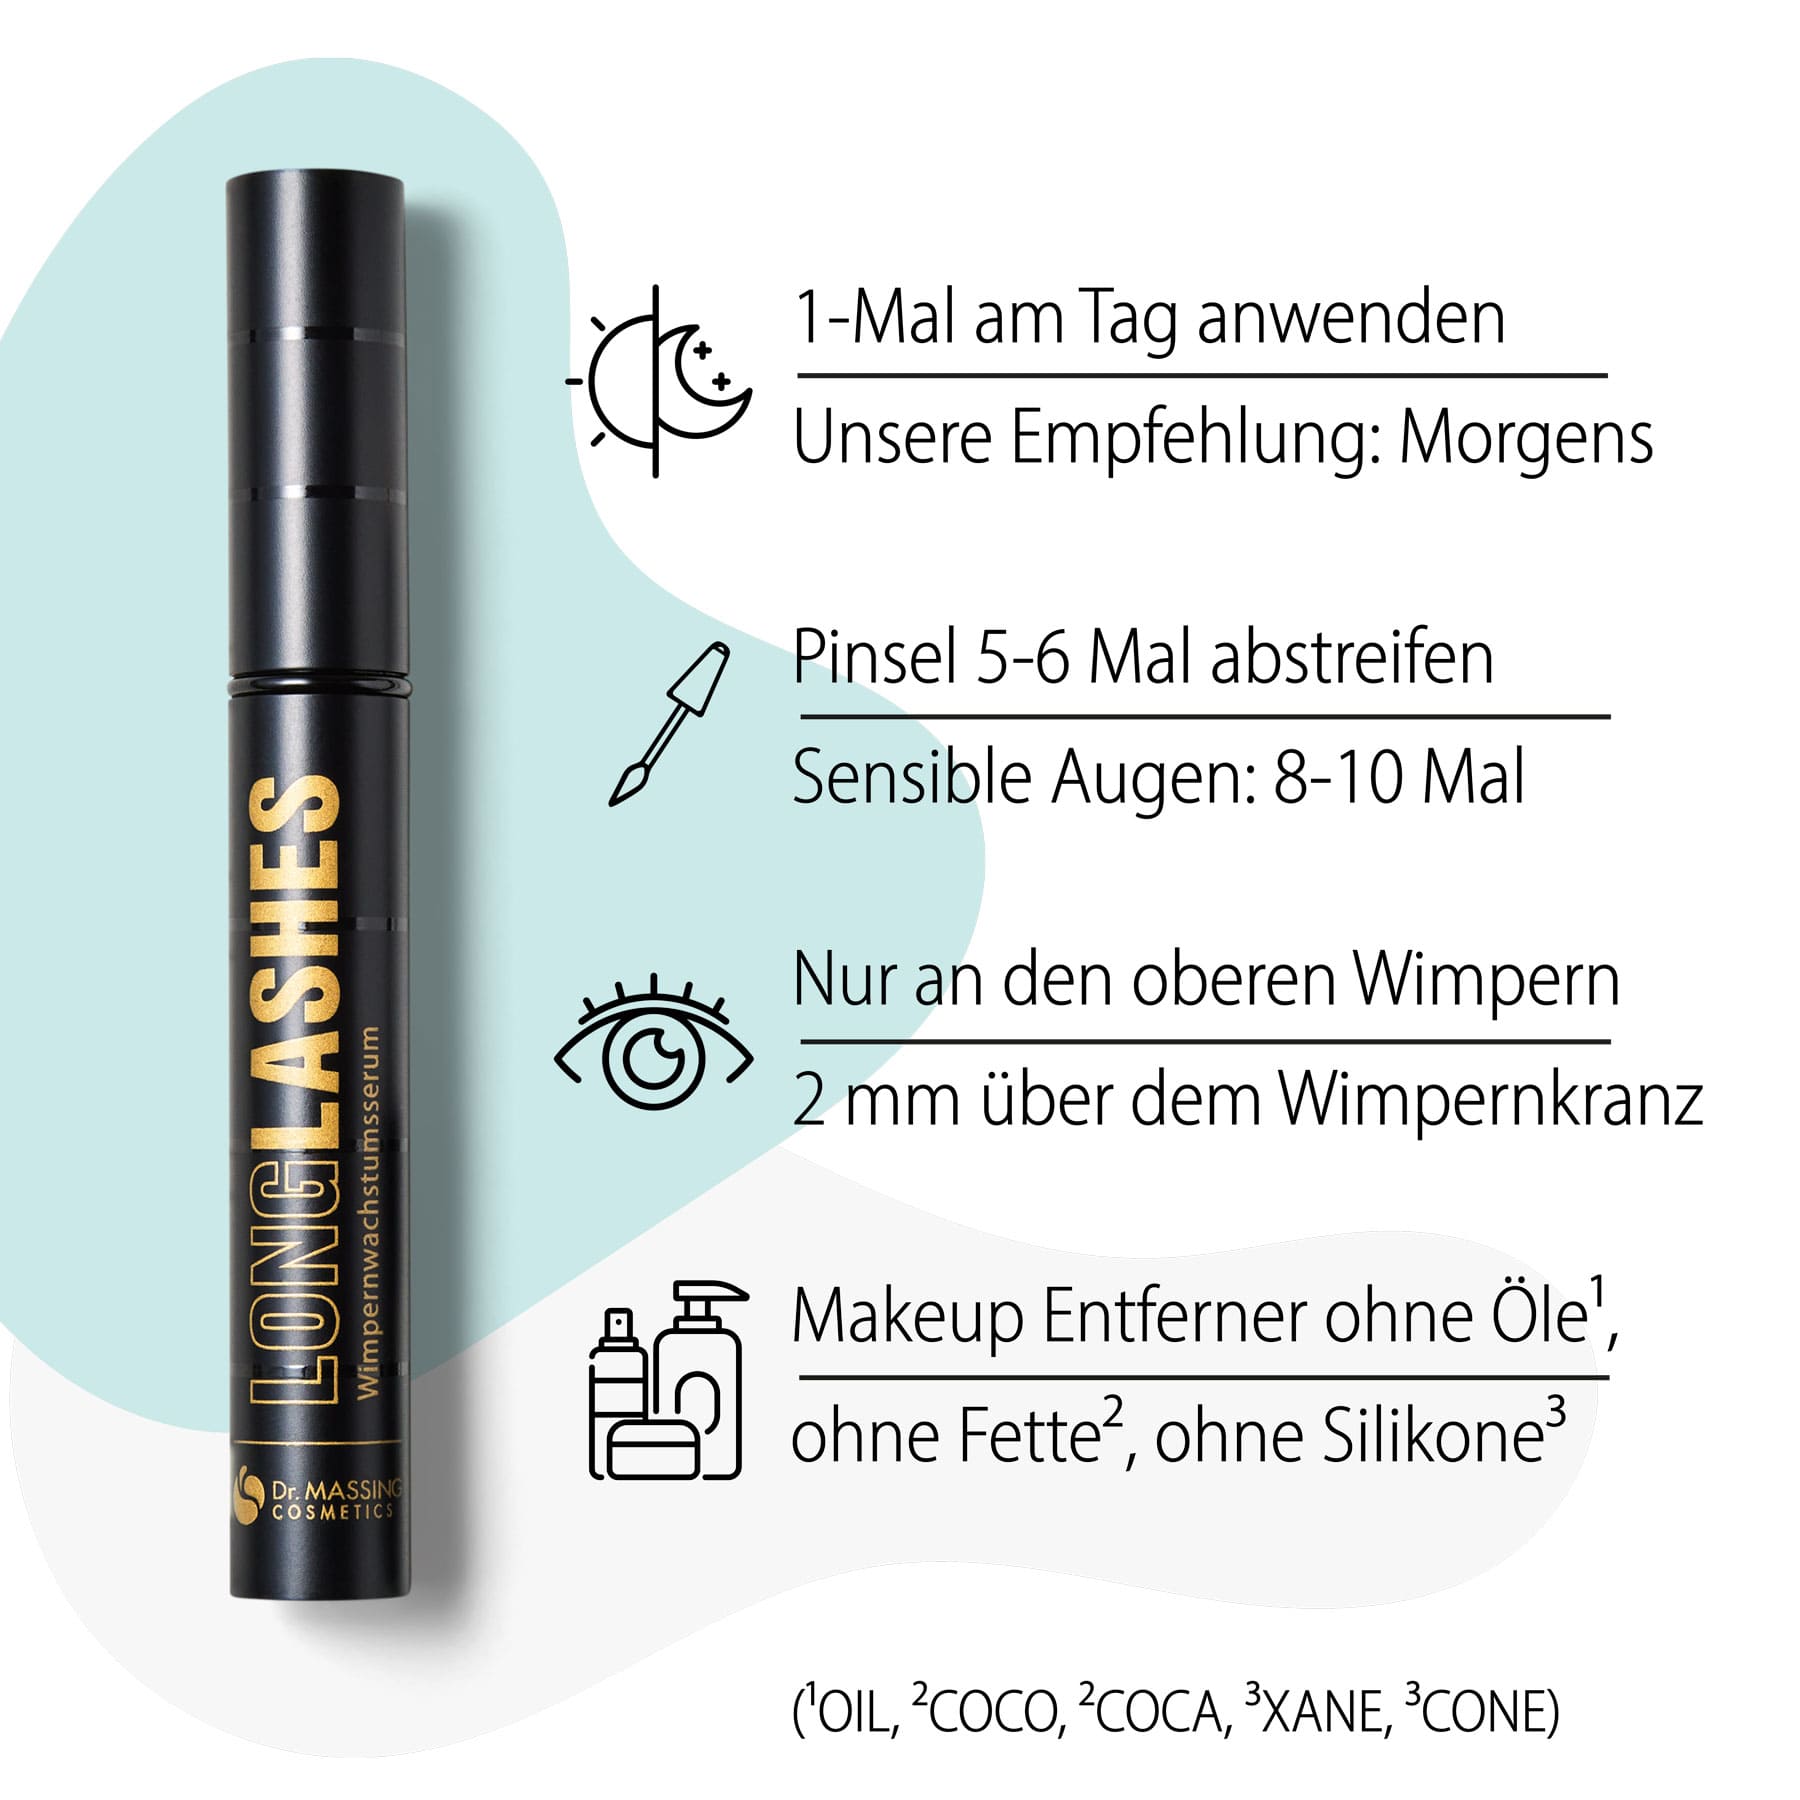 Dr. Massing Knallbonbon schwarz LongLashes Special Edition Geschenkbox Details Vorteile Anwendung Wimpernserum 01